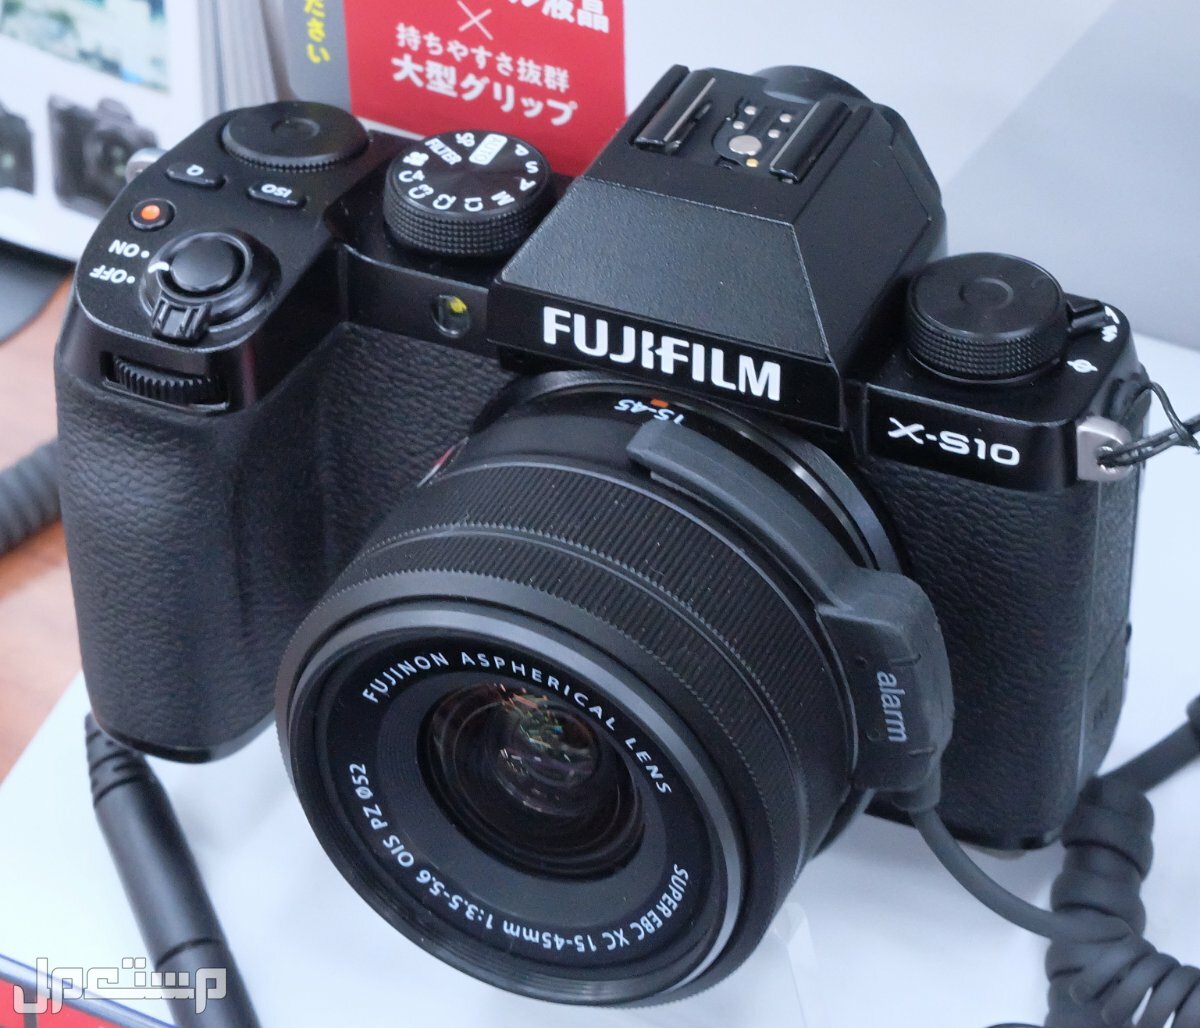 مواصفات ومميزات وعيوب كاميرات التصوير فوجي فيلم في الإمارات العربية المتحدة مواصفات كاميرا Fujifilm X-S10